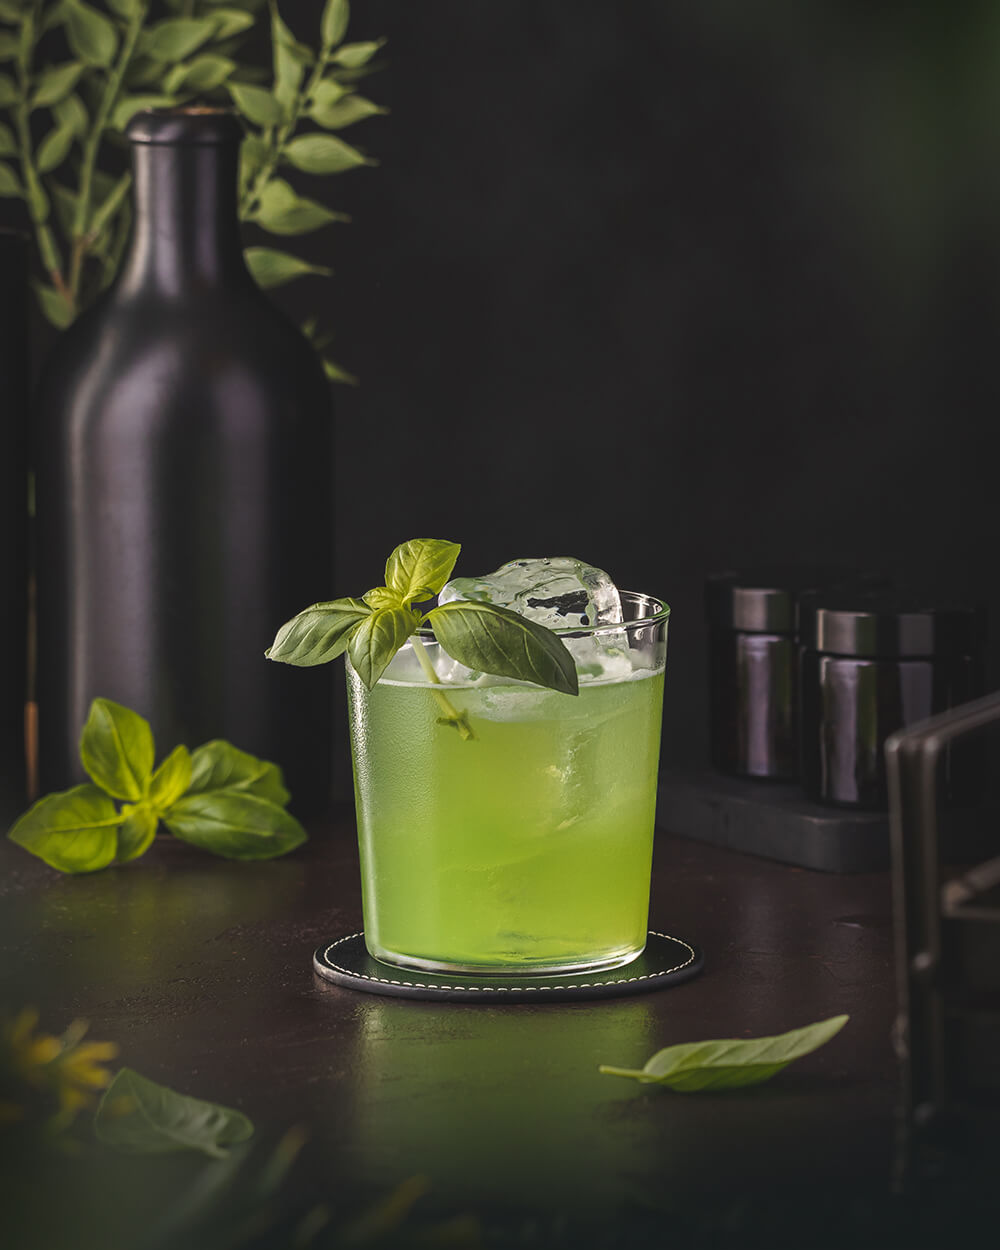 Gin Basil Smash: Der Sour Cocktail mit Basilikum